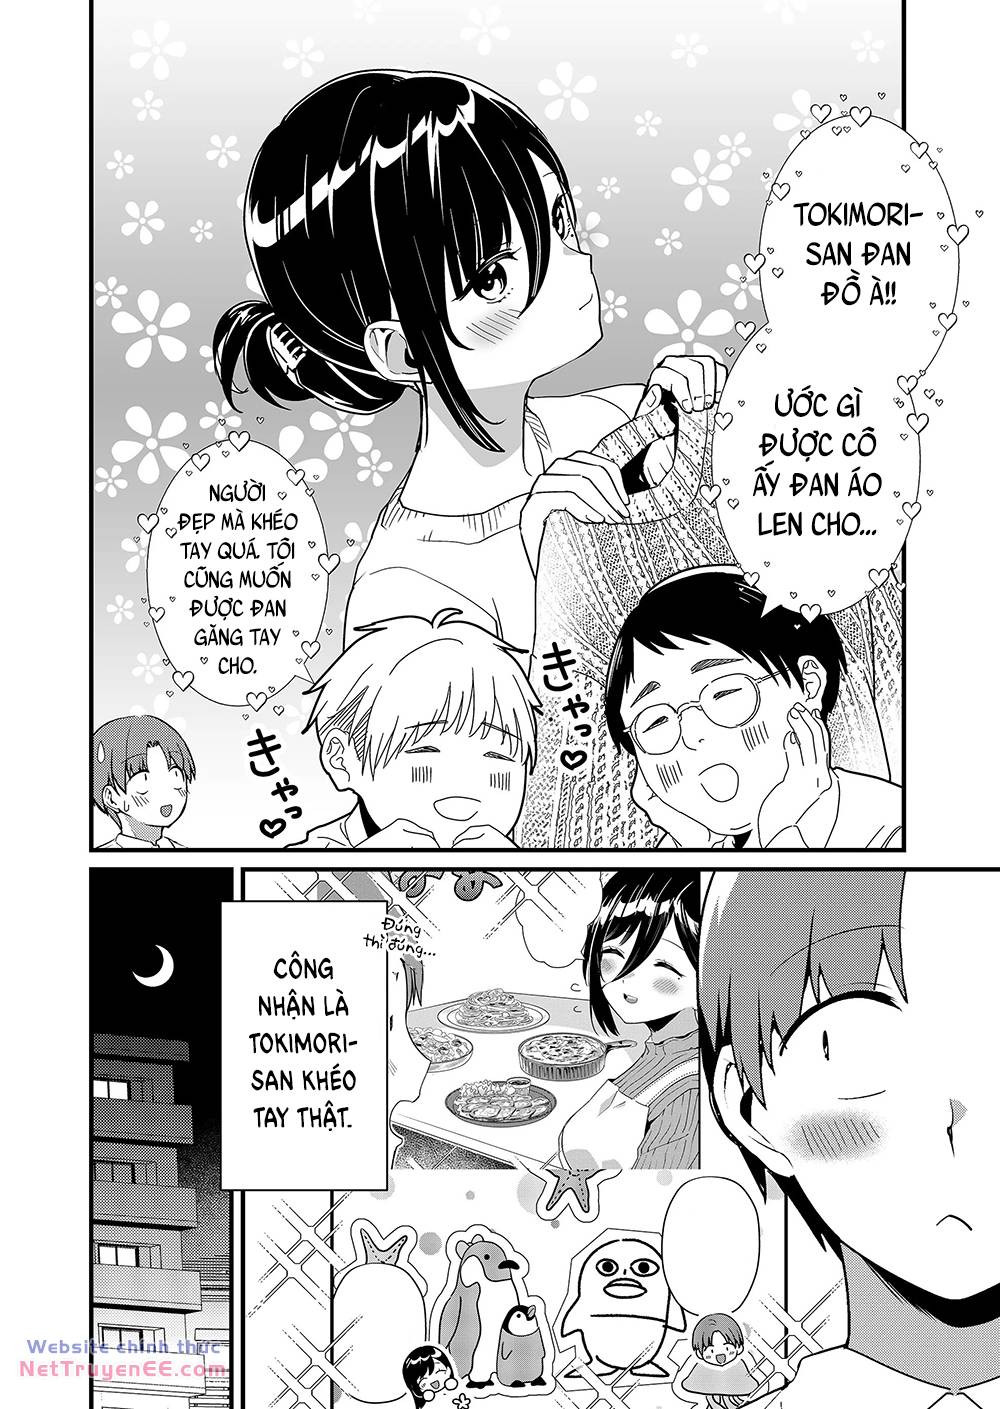 Tokimori-san Chẳng Chút Phòng Bị!!: Chapter 36: Tokimori-san và valentine